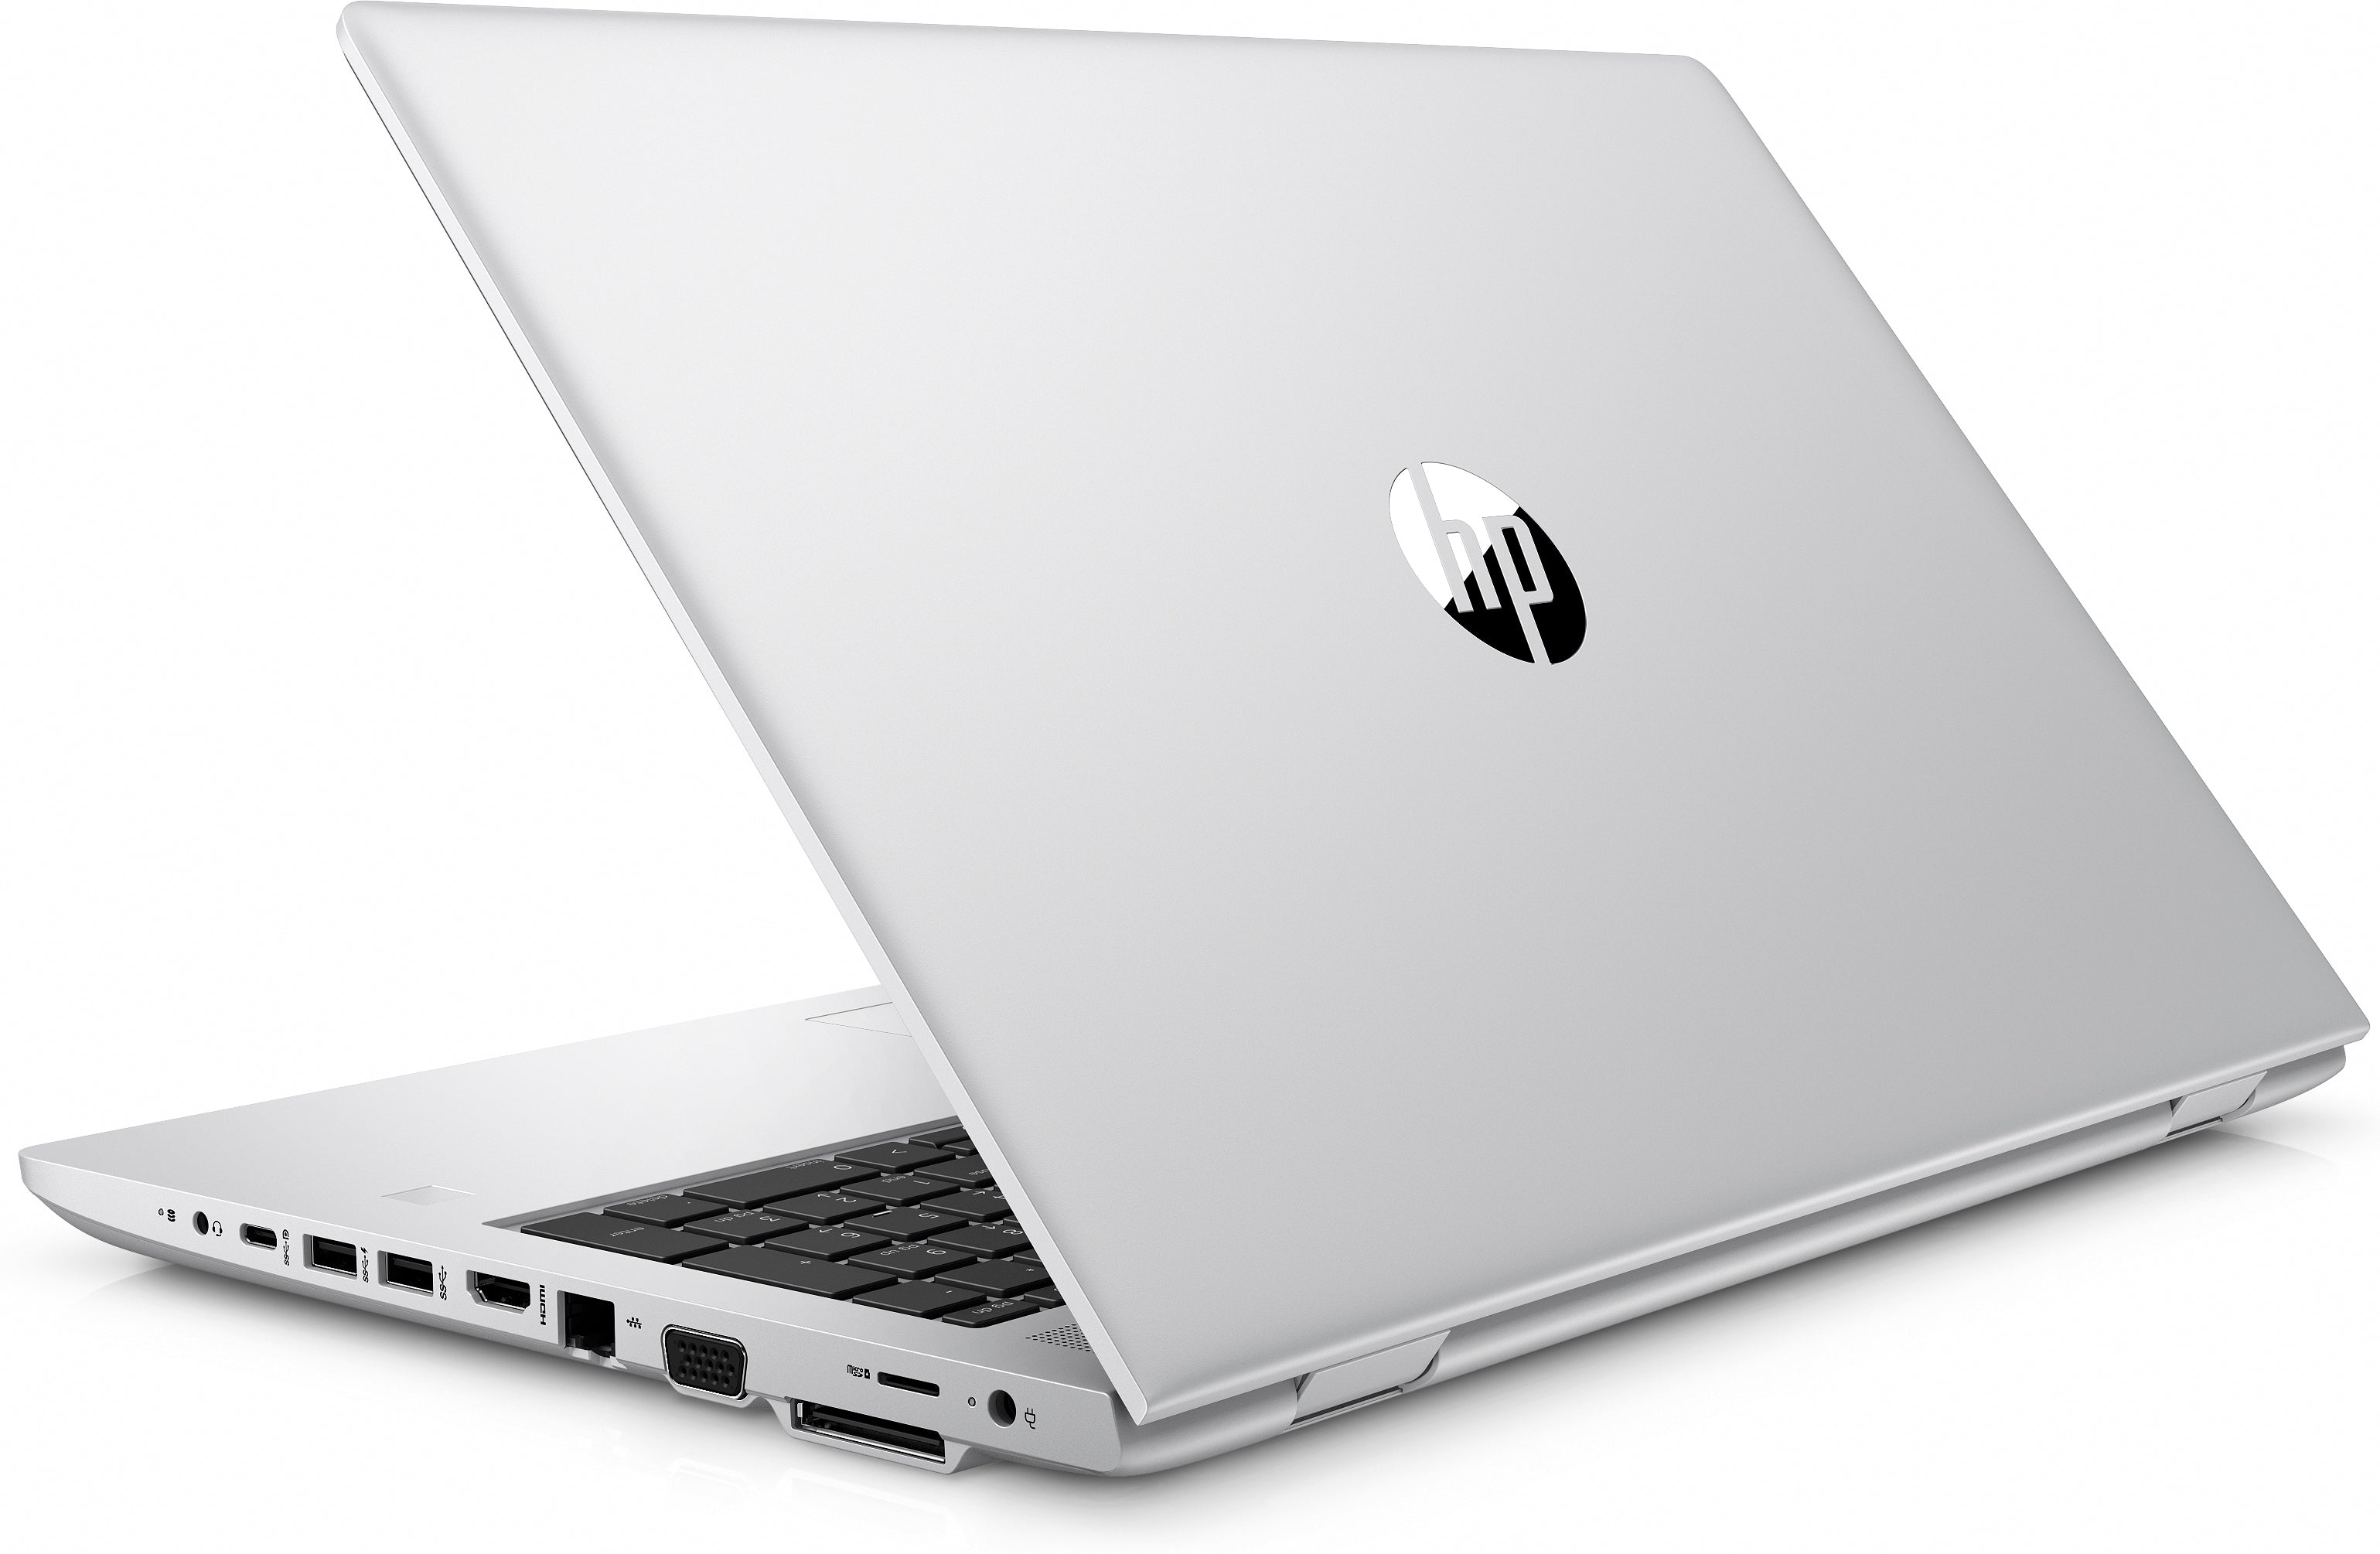 HP Laptop ProBook 650 G4 | i5-7300U | 8GB | 500 GB | GBR.